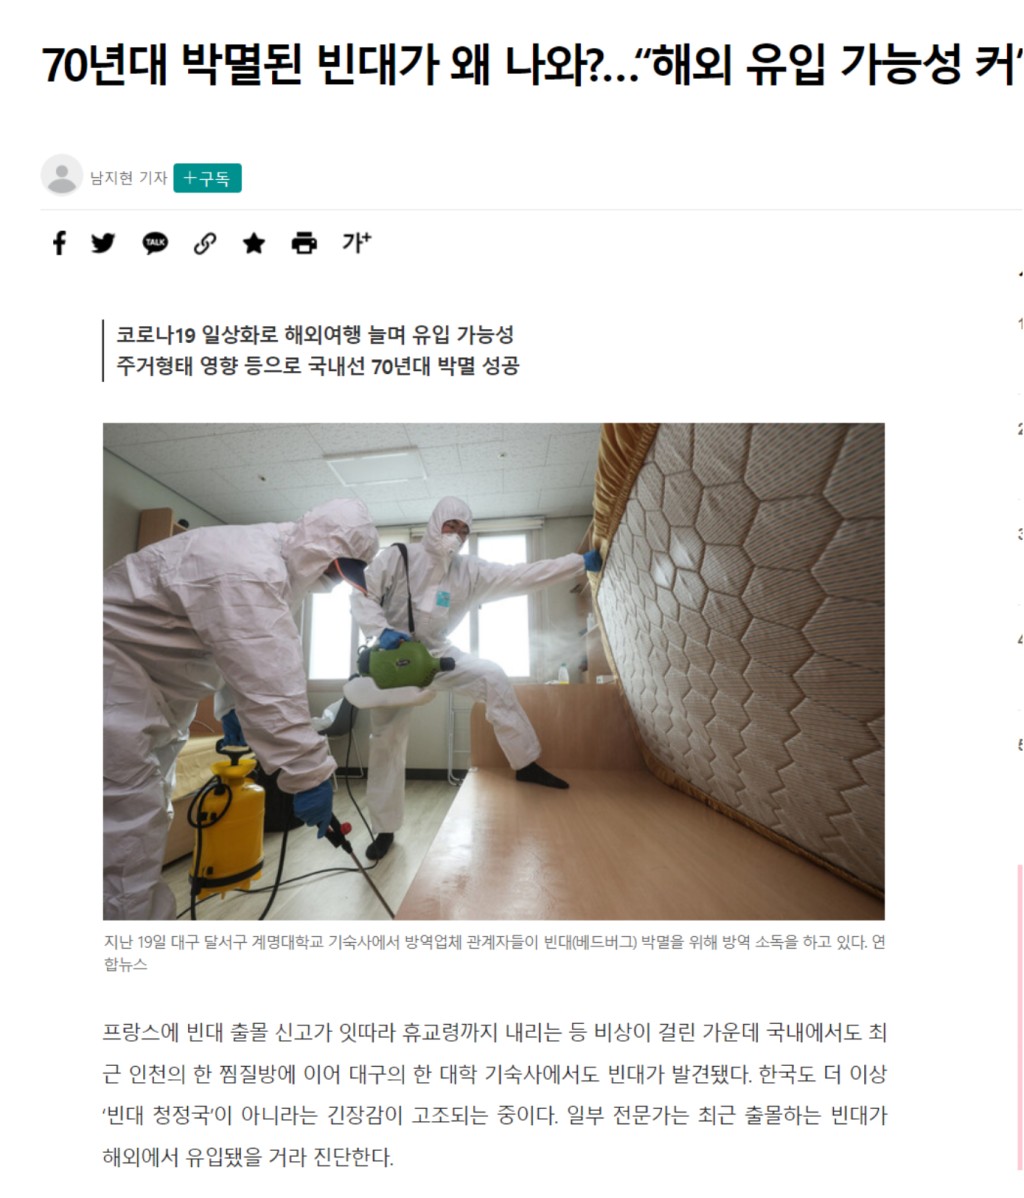 韩国不少新闻网近日报道当地虱患严重。